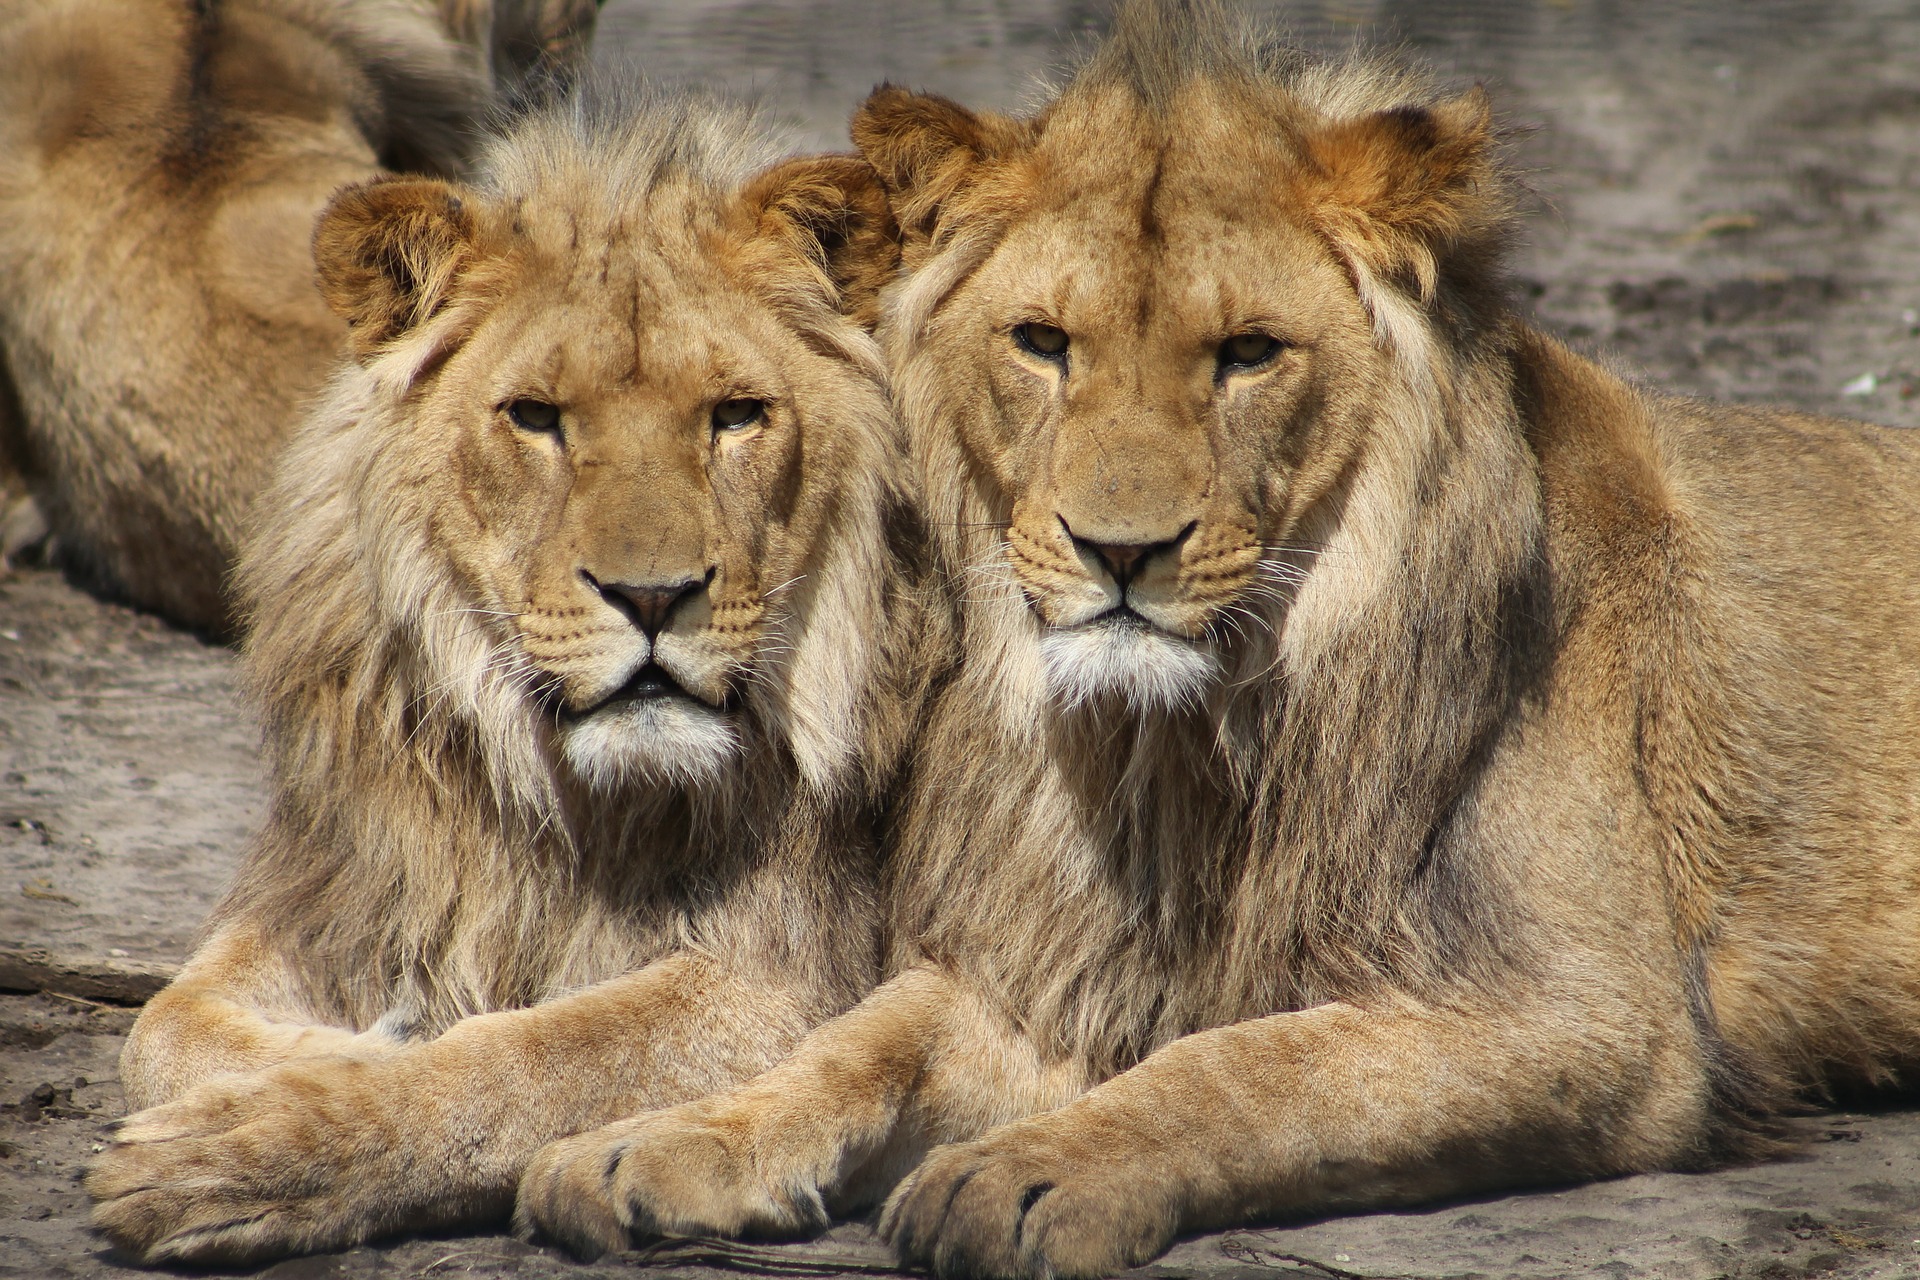 זהירות אריות בדרך- כלים לגילוי האריות שאנחנו שמות לעצמנו בדרך